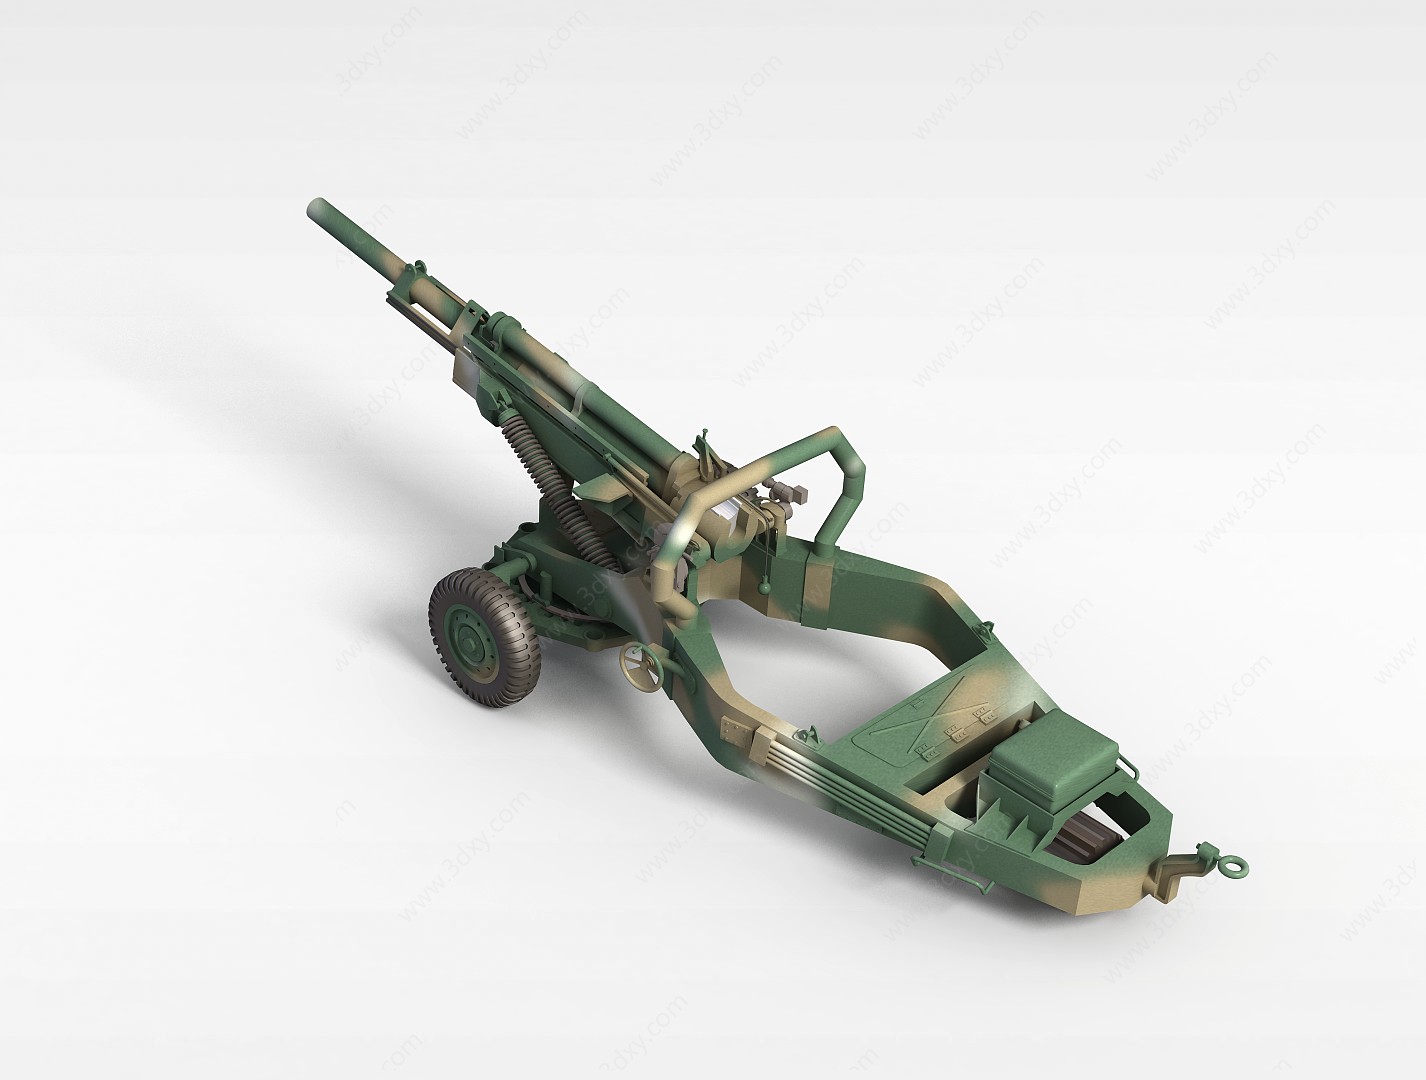 军事榴弹炮3D模型